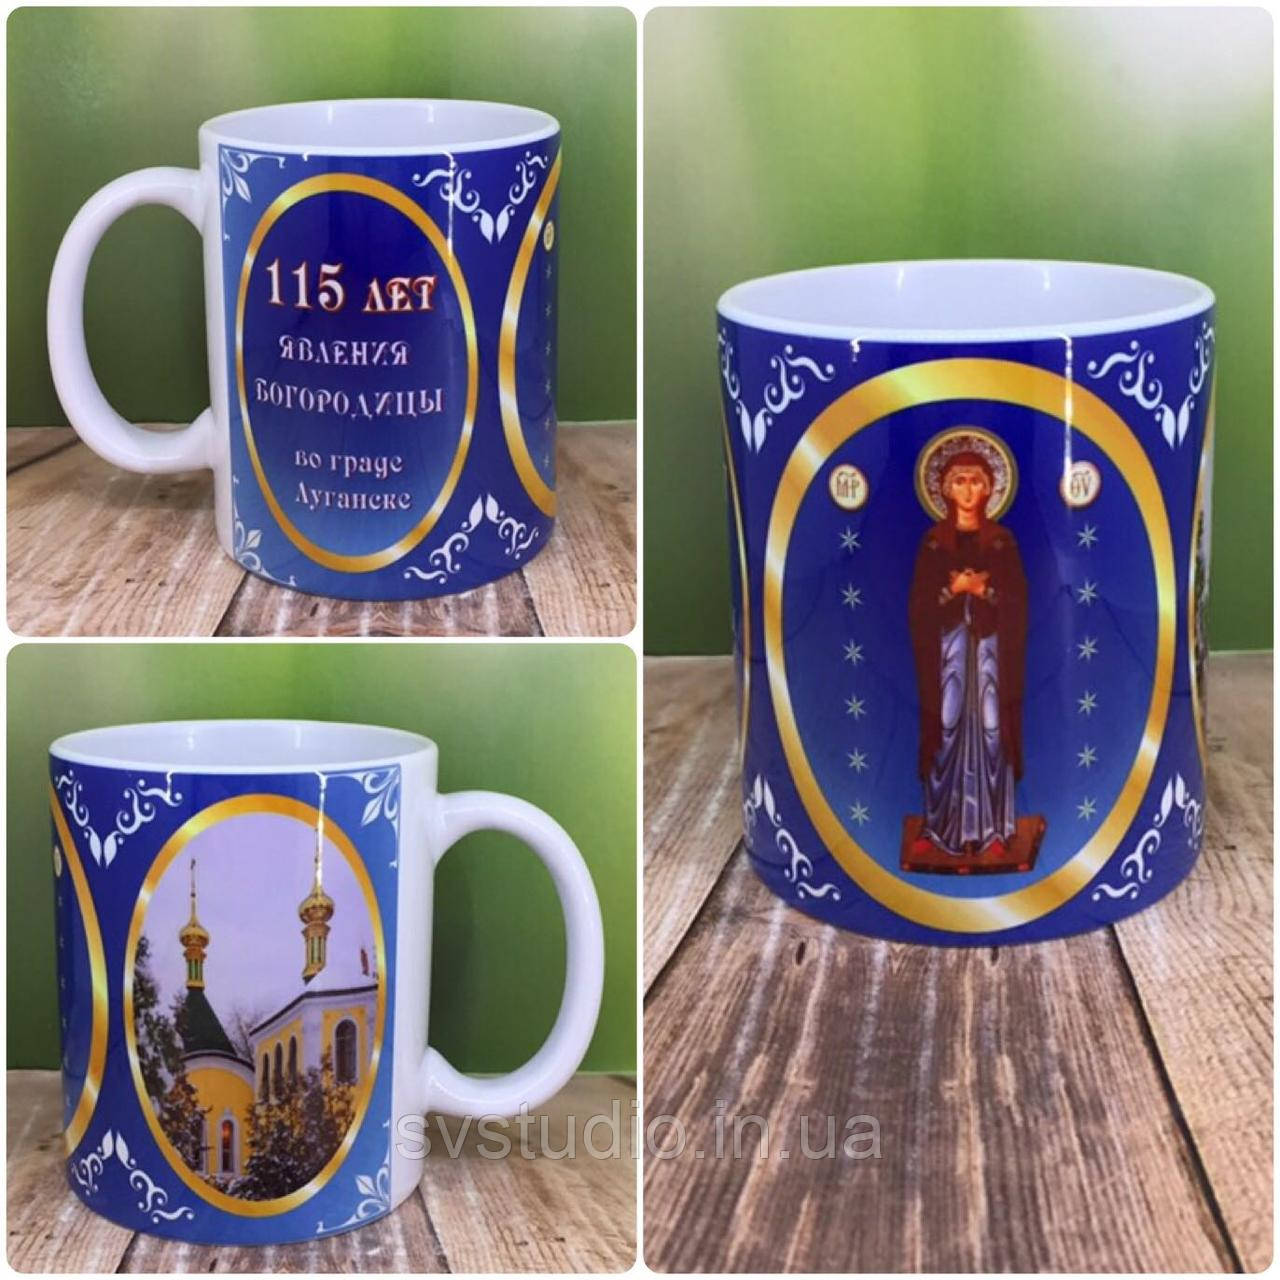 Друк на чашках,Чашка "115 років явлення Богородиці у граді Луганську "